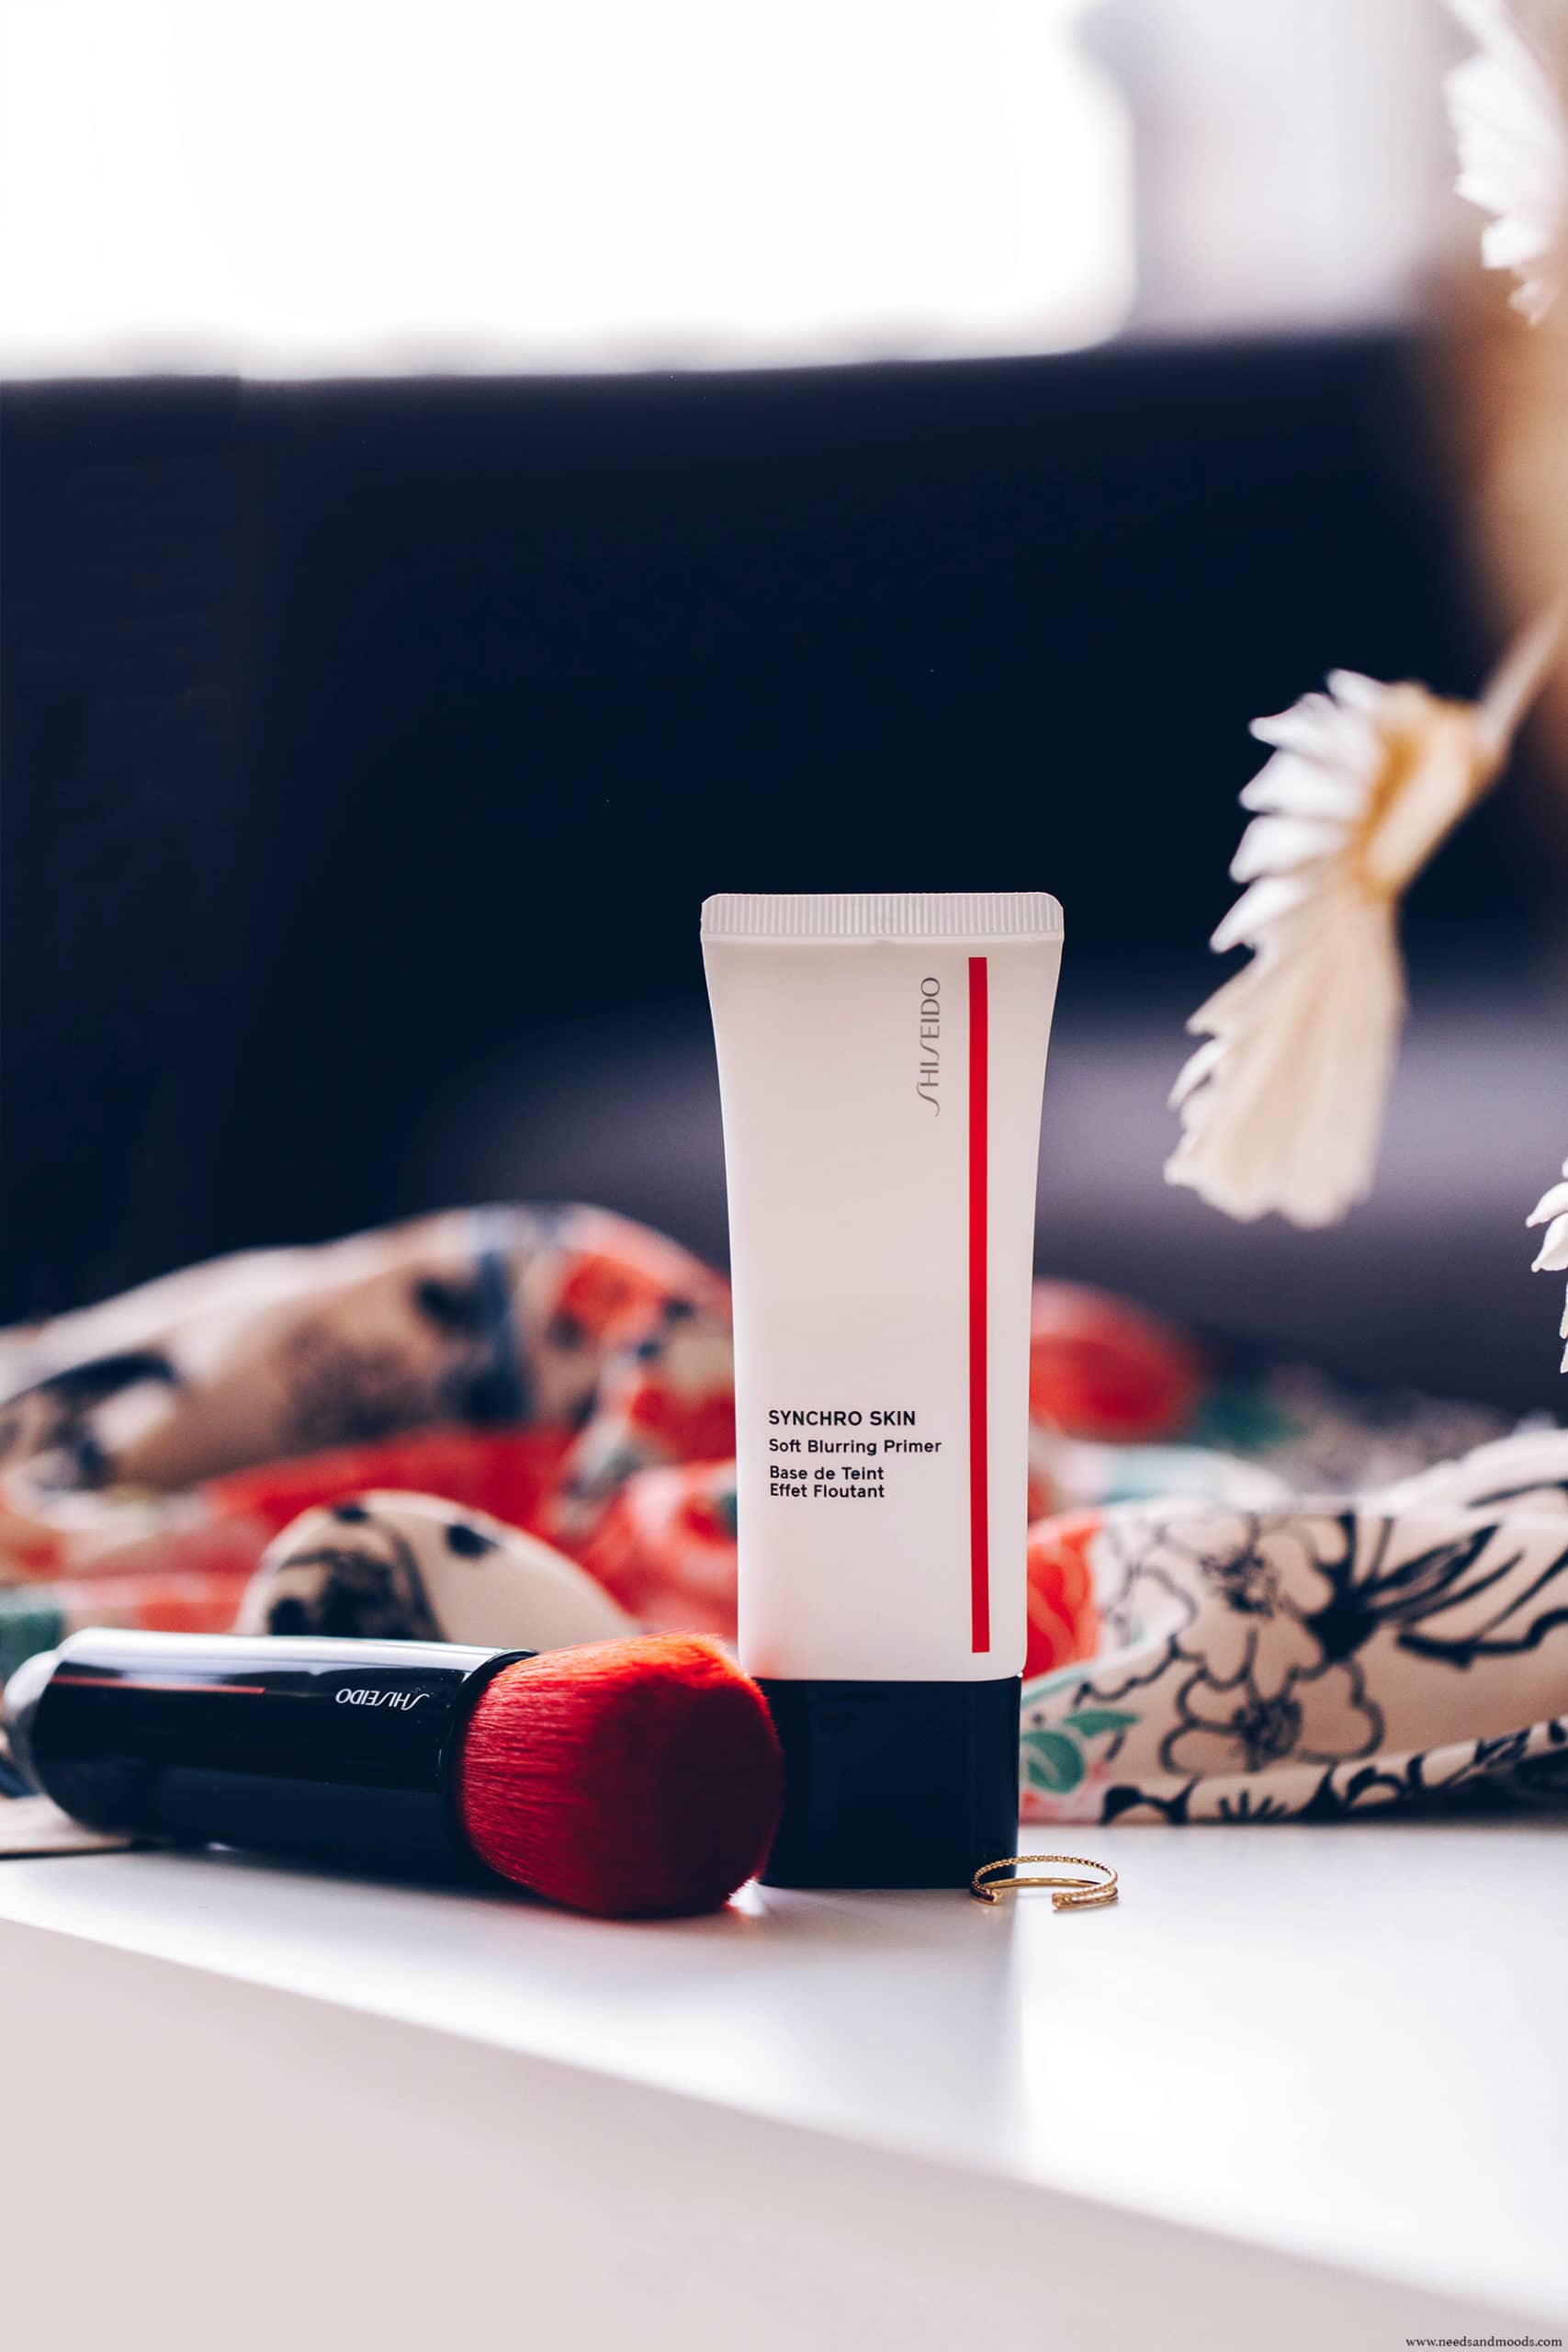 shiseido synchro skin soft burring primer